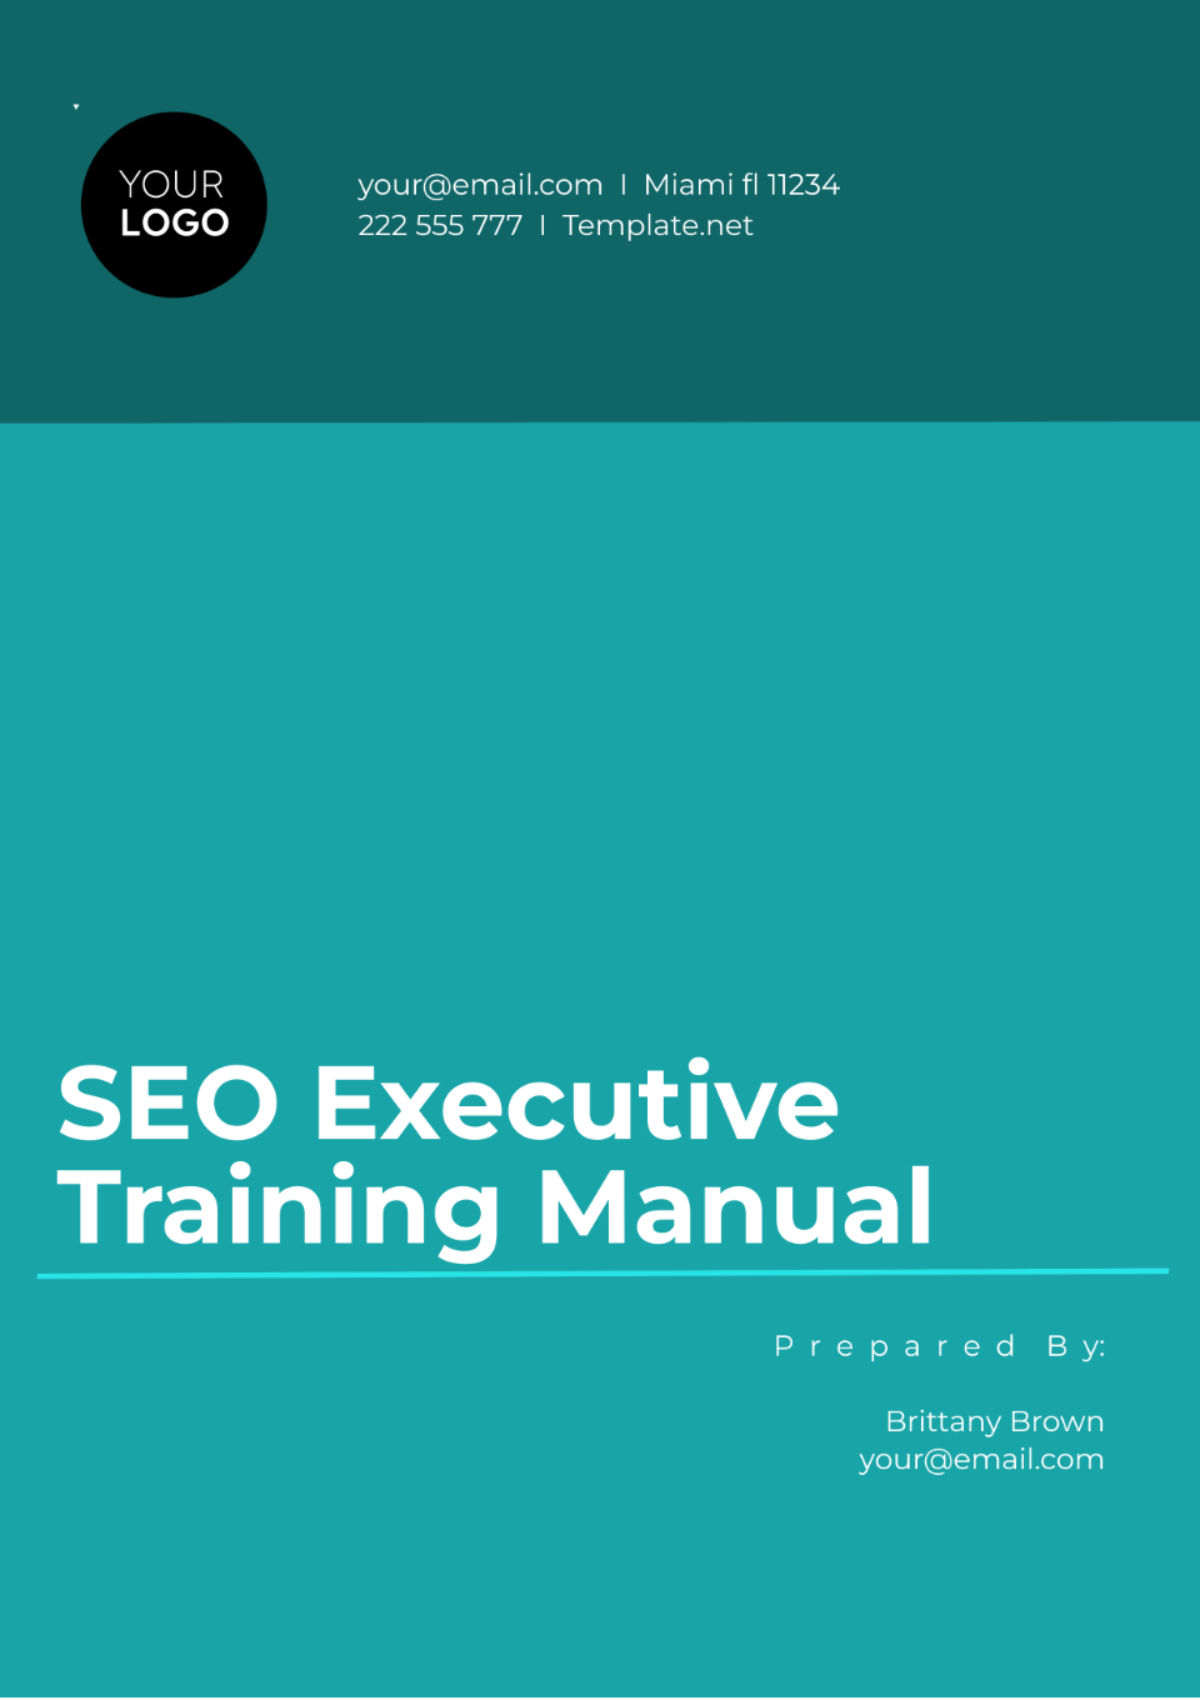 Seo Executive Training Manual Template